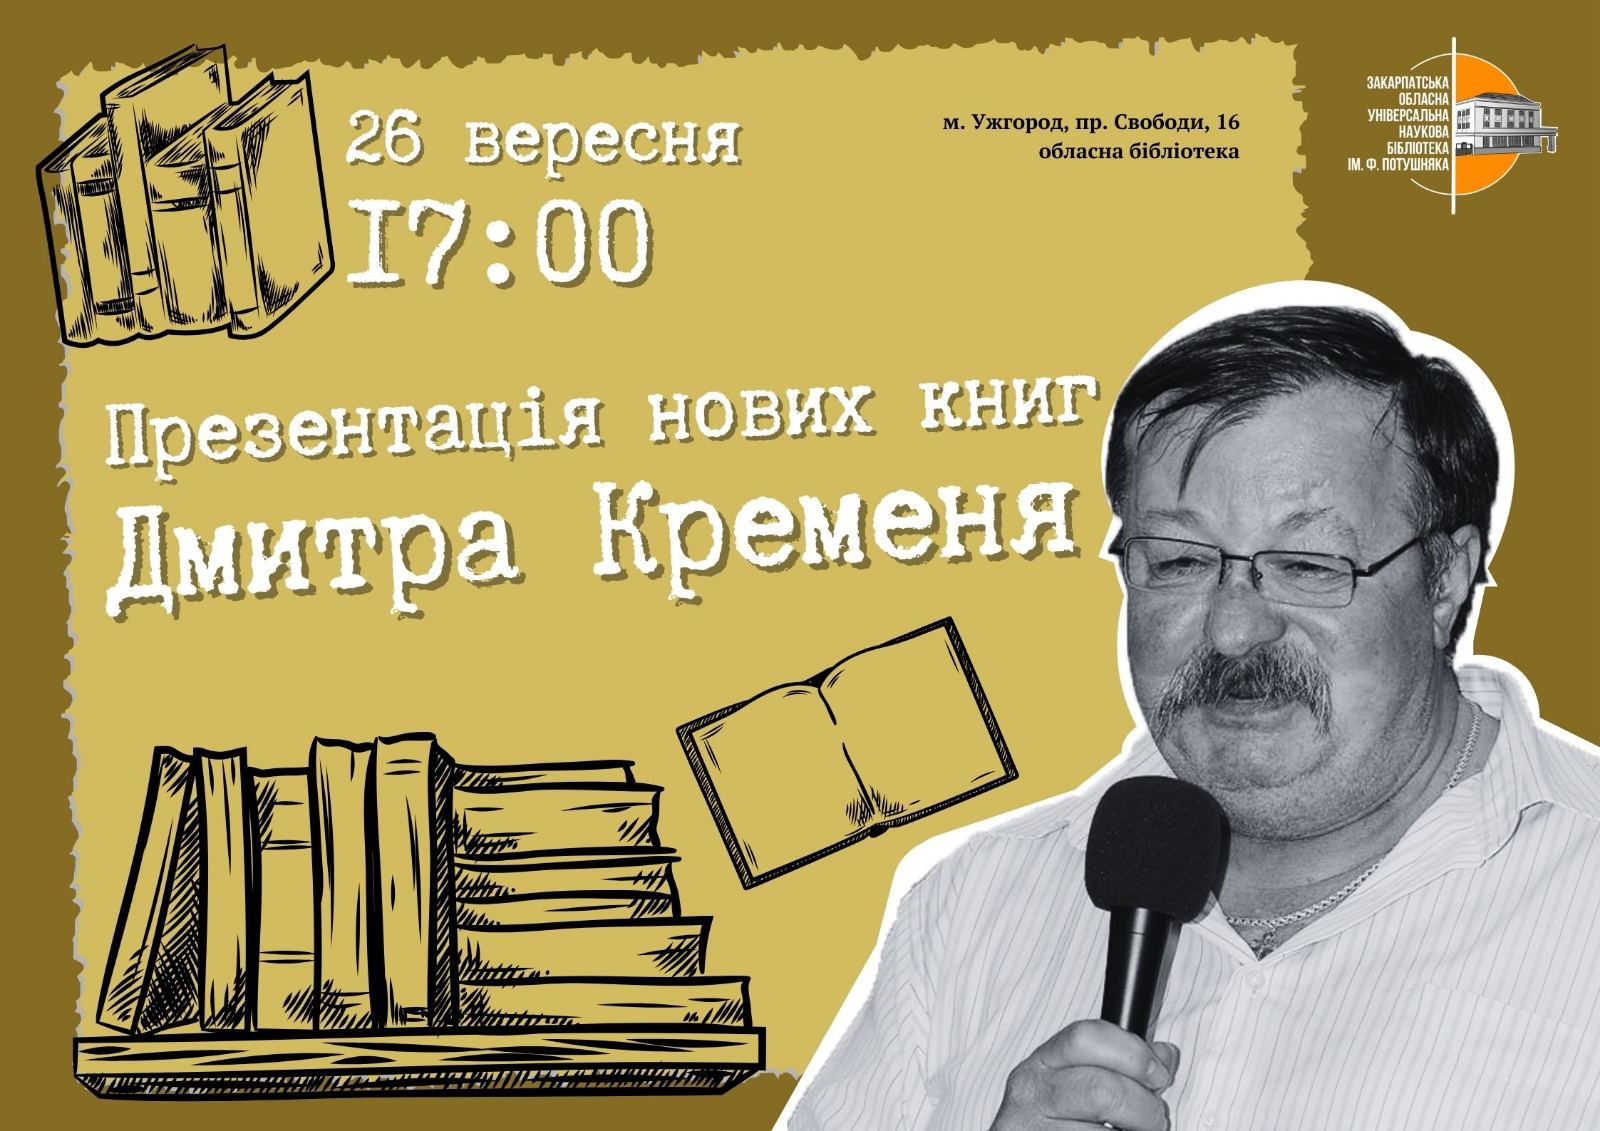 В Ужгороді представлять нові книжки Дмитра Кременя